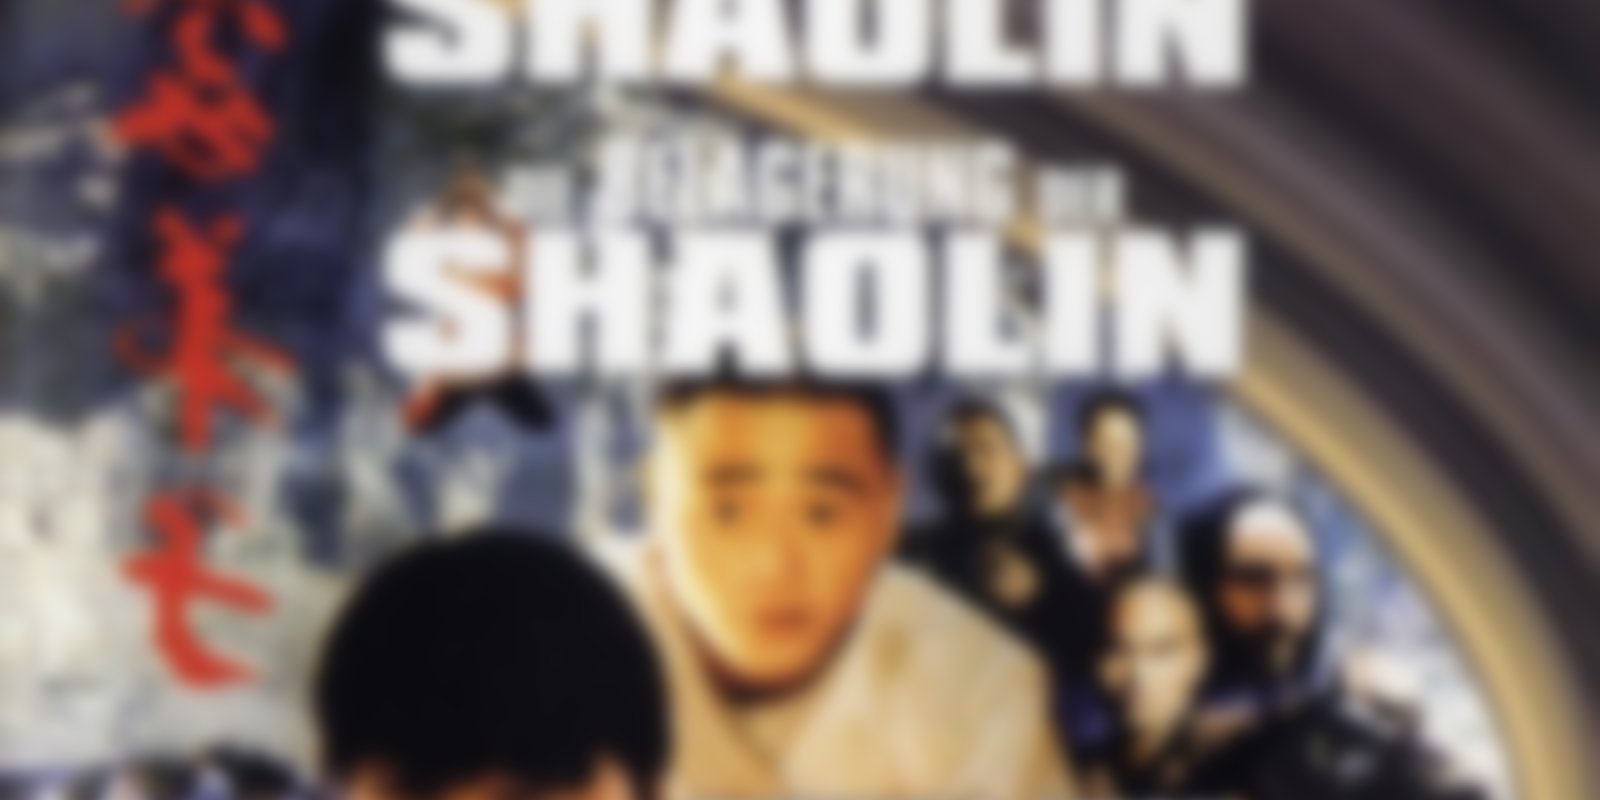 Das tödliche Vermächtnis der Shaolin / Die Belagerung der Shaolin